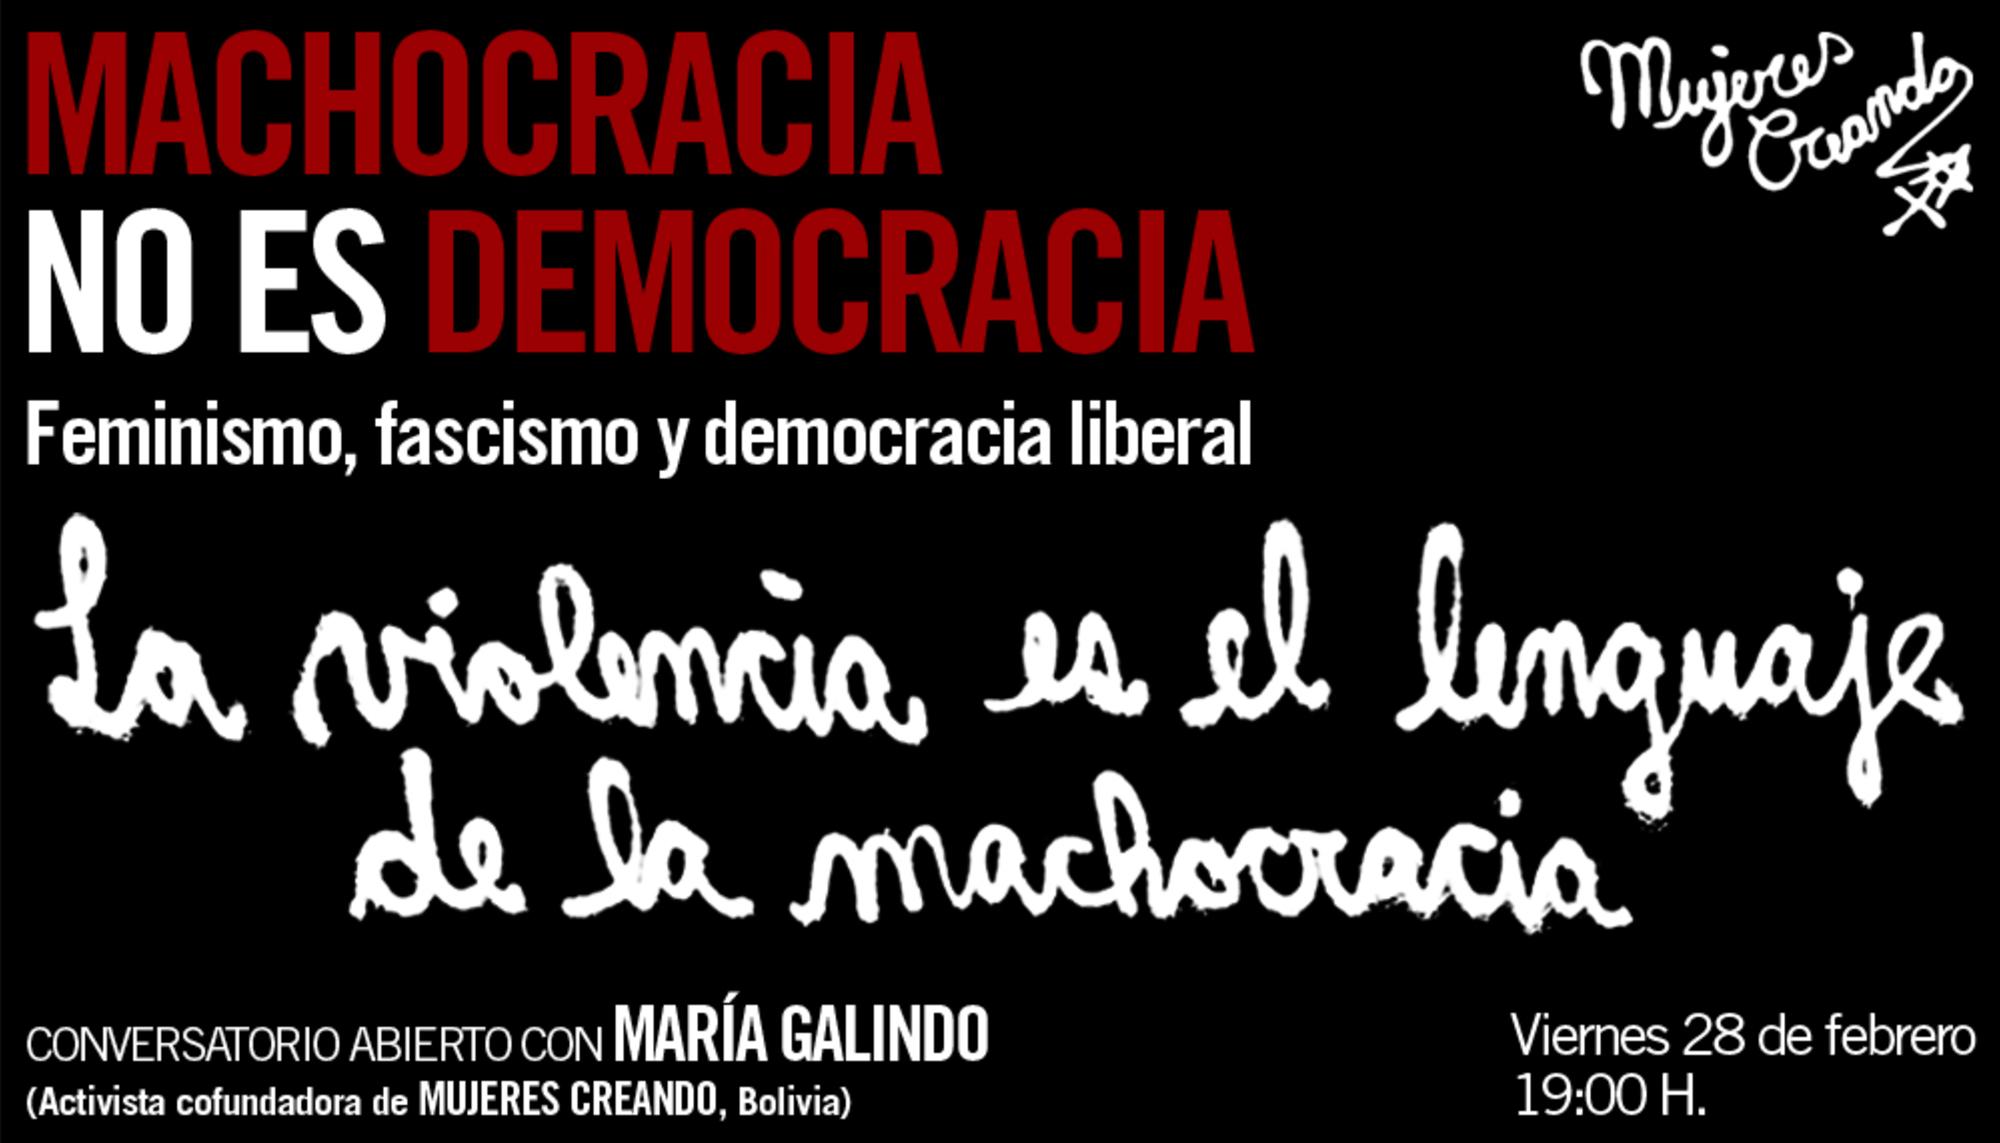 Machocracia no es democracia